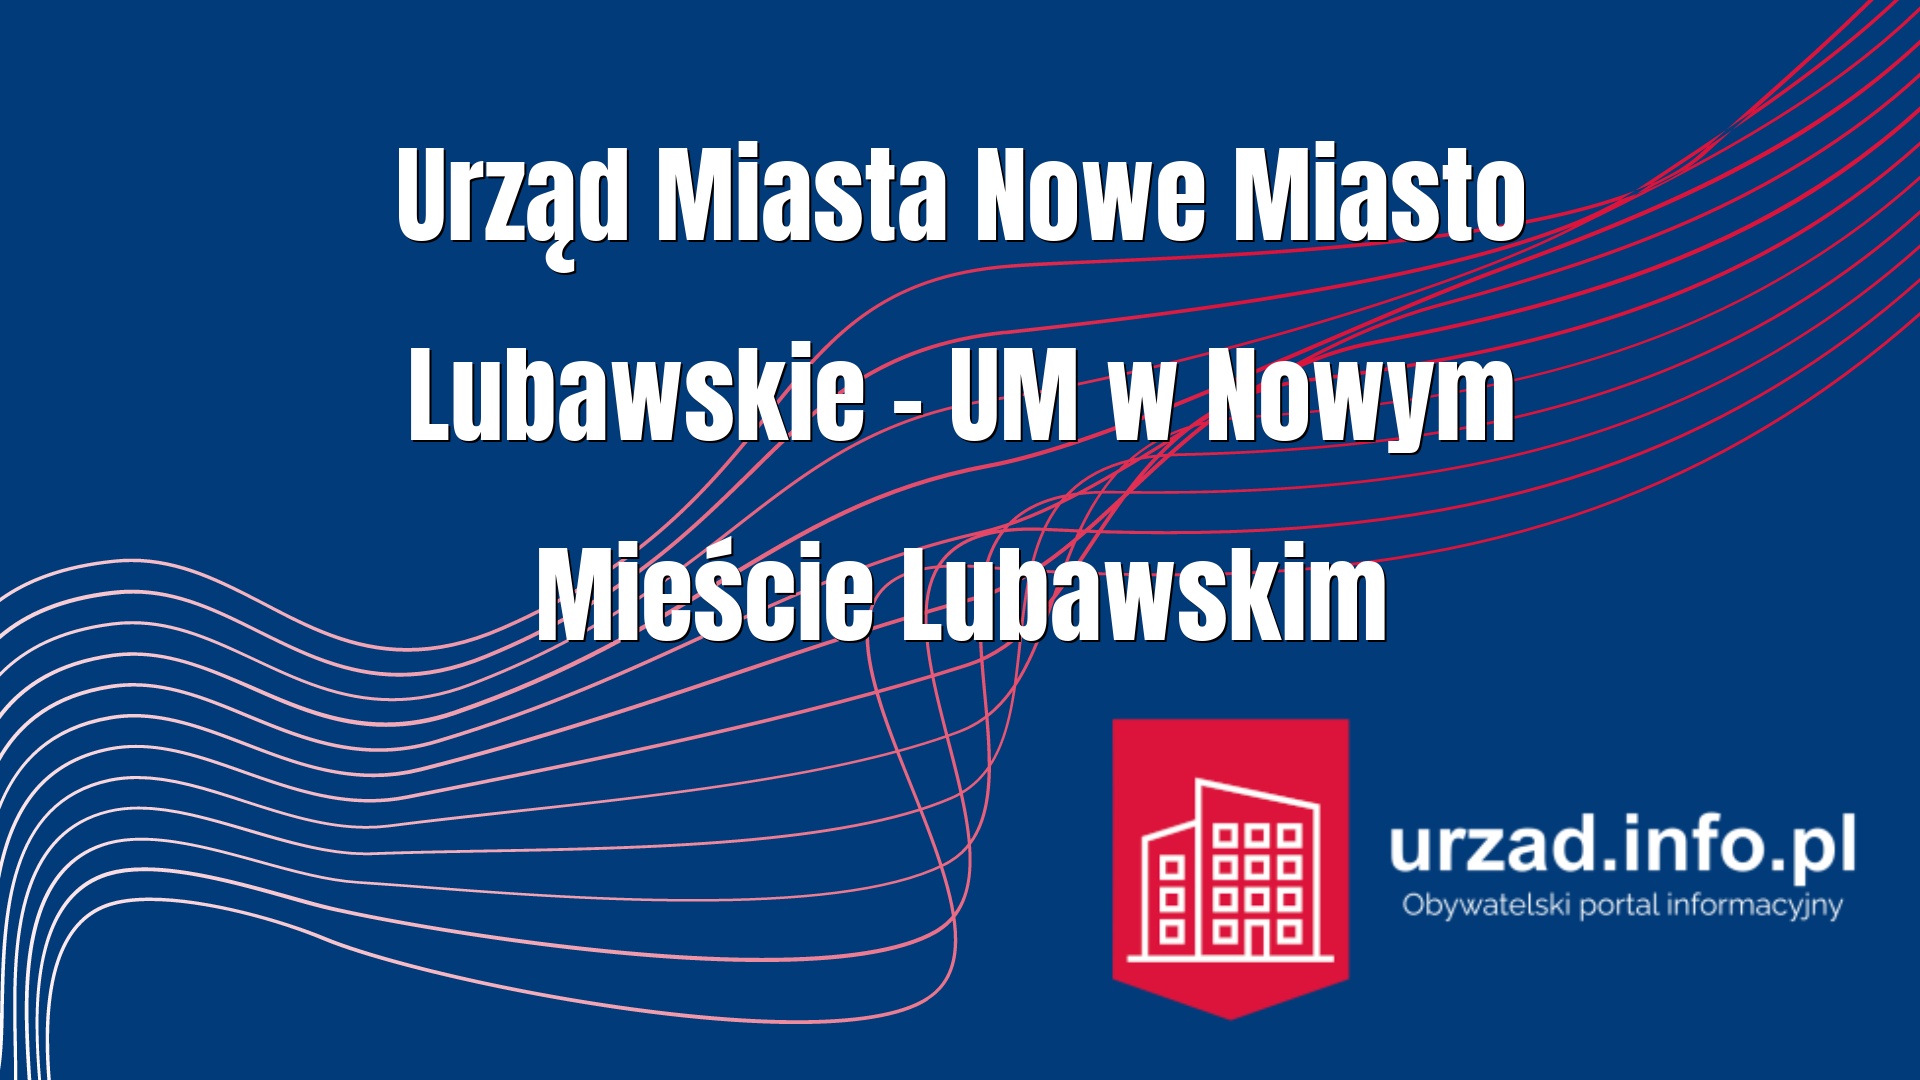 Urząd Miasta Nowe Miasto Lubawskie – UM w Nowym Mieście Lubawskim